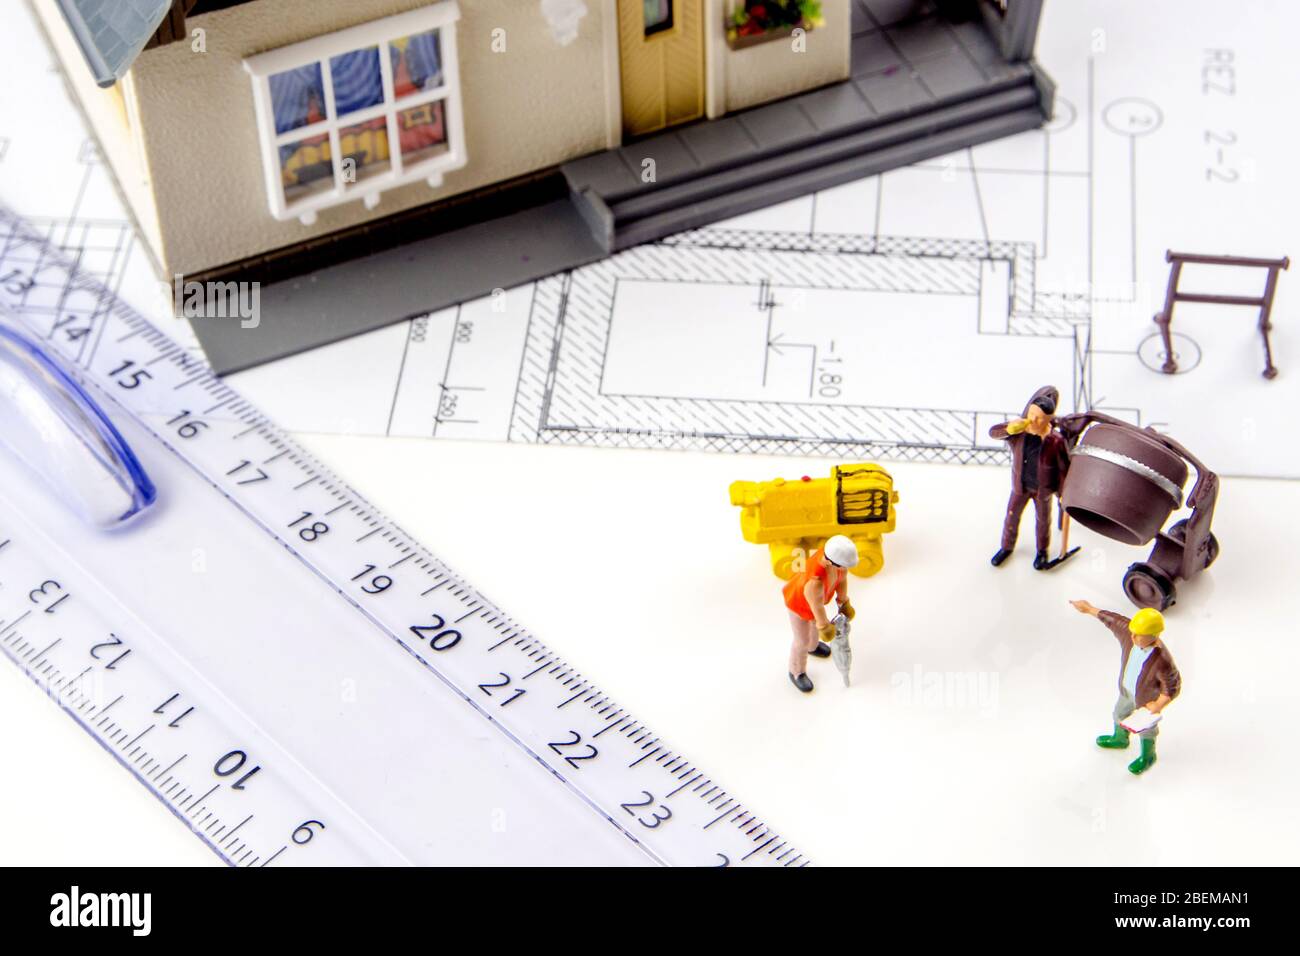 gros plan d'une petite maison en plastique miniature avec des travailleurs de la figurine miniature et des plans de construction Banque D'Images